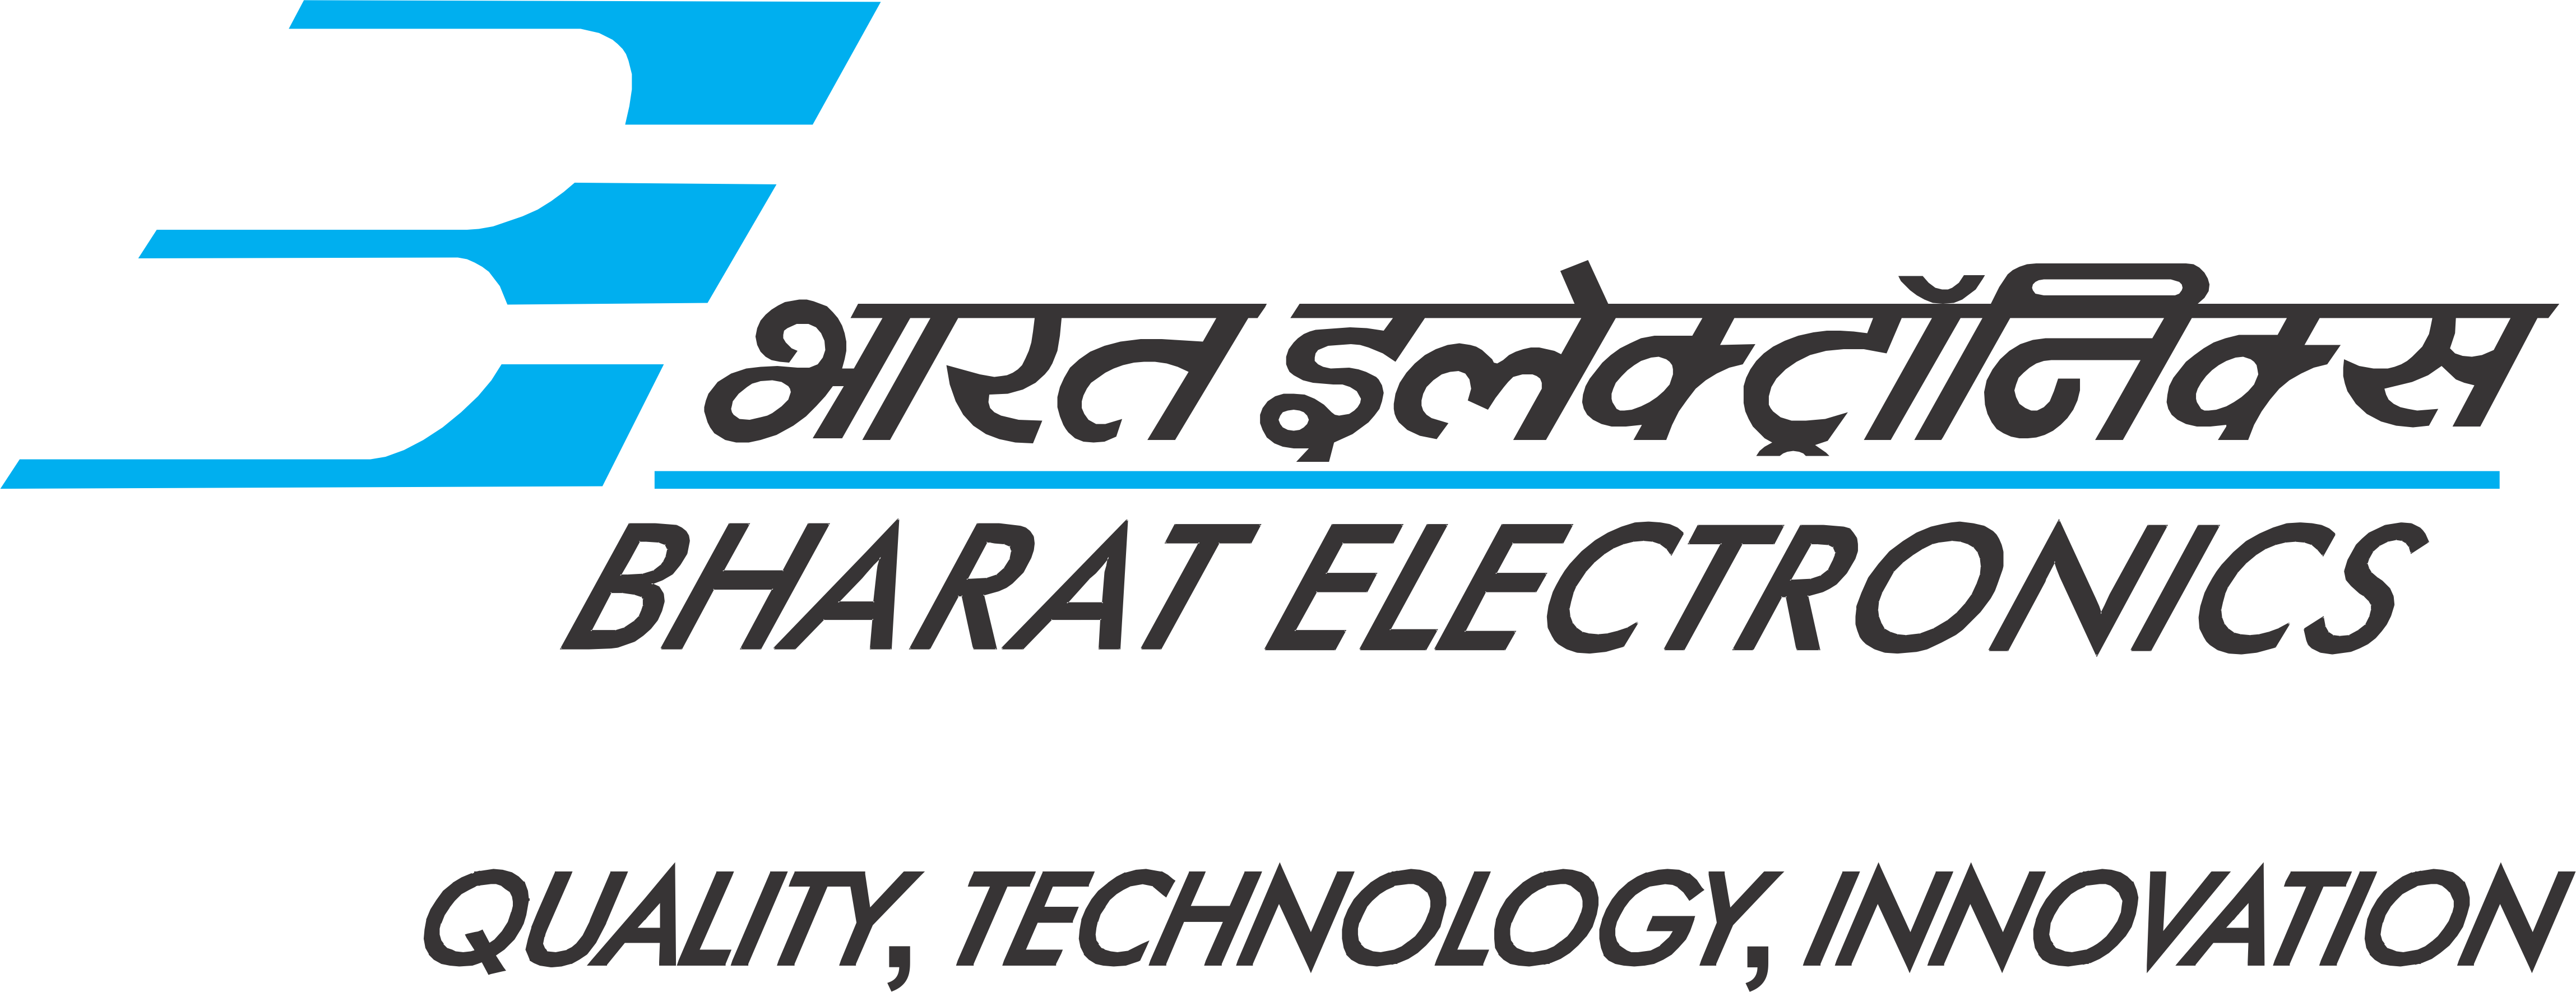 Bharat Electronics Corp Attire